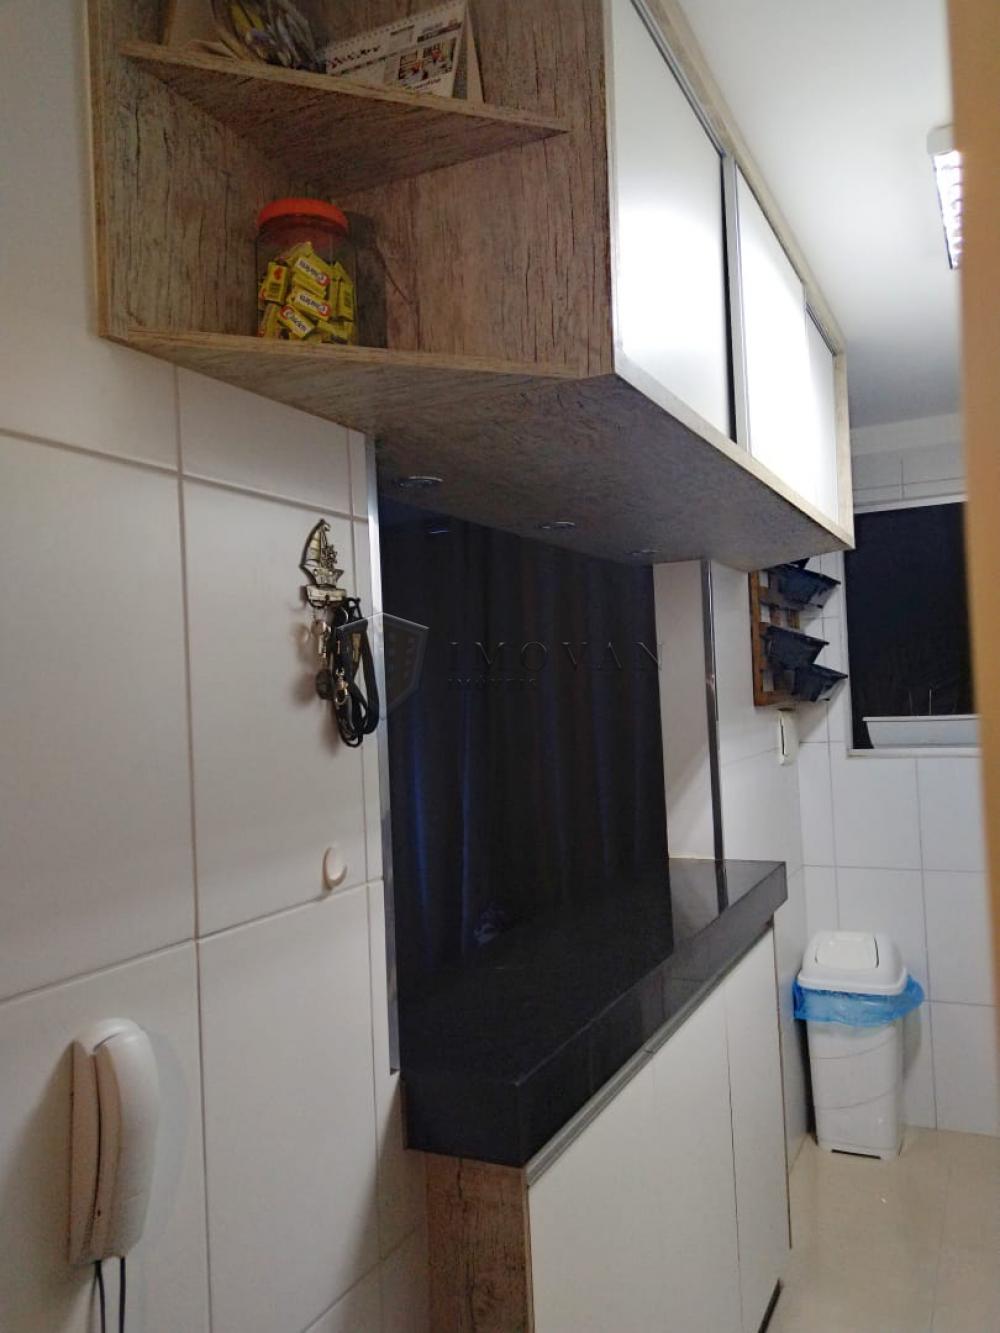 Comprar Apartamento / Padrão em Ribeirão Preto R$ 195.000,00 - Foto 4